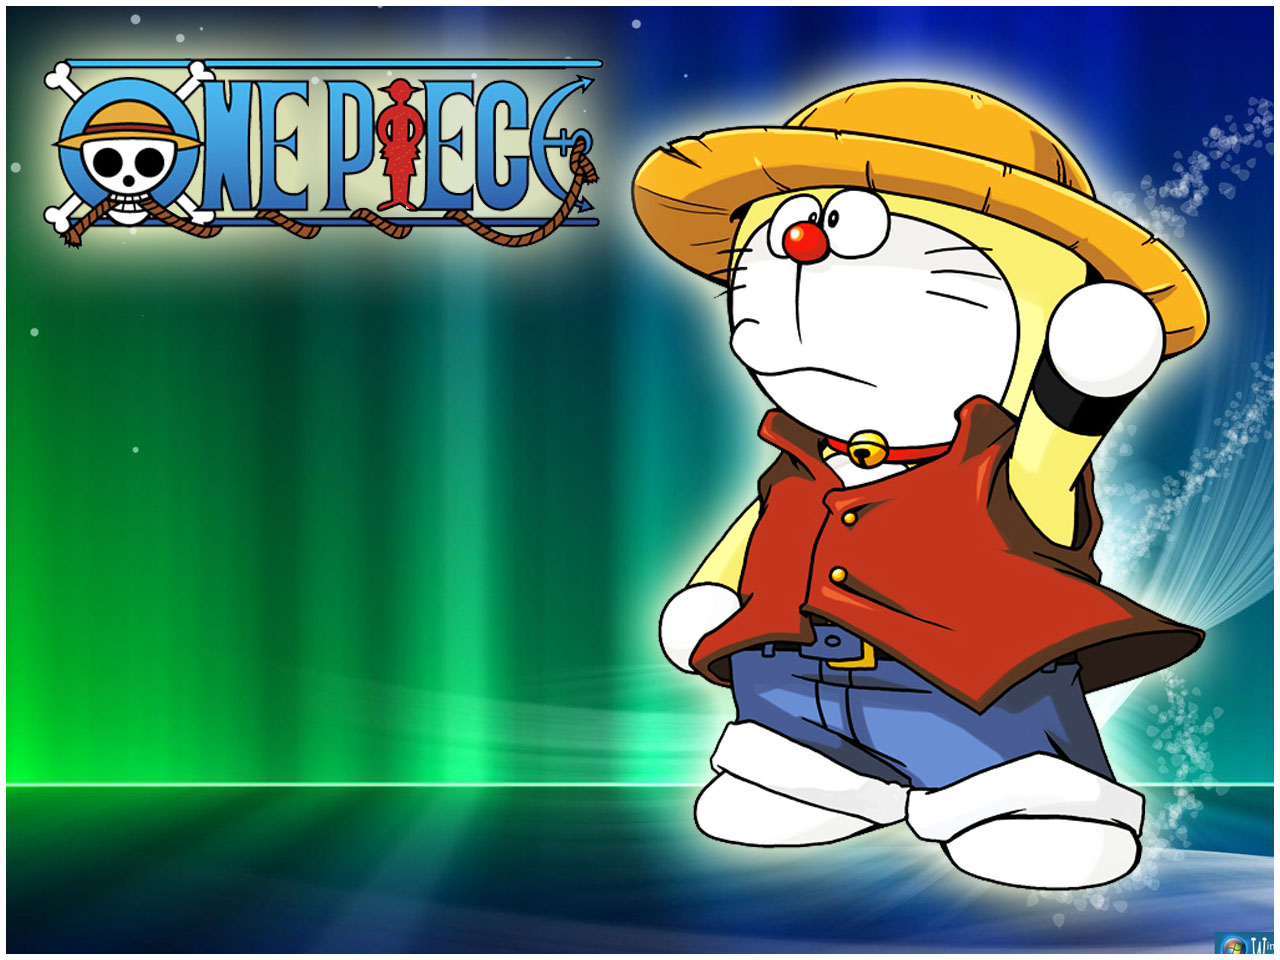 Nobita tạo One Piece: Đến với One Piece, một câu chuyện li kỳ xoay quanh chuyến phiêu lưu của Luffy và nhóm bạn. Với sự pha trộn của thế giới ngầm và kỳ lạ, giữa những nhân vật có sức mạnh phi thường. Nobita, nhân vật chính trong loạt truyện Doraemon cũng đã từng tạo ra \